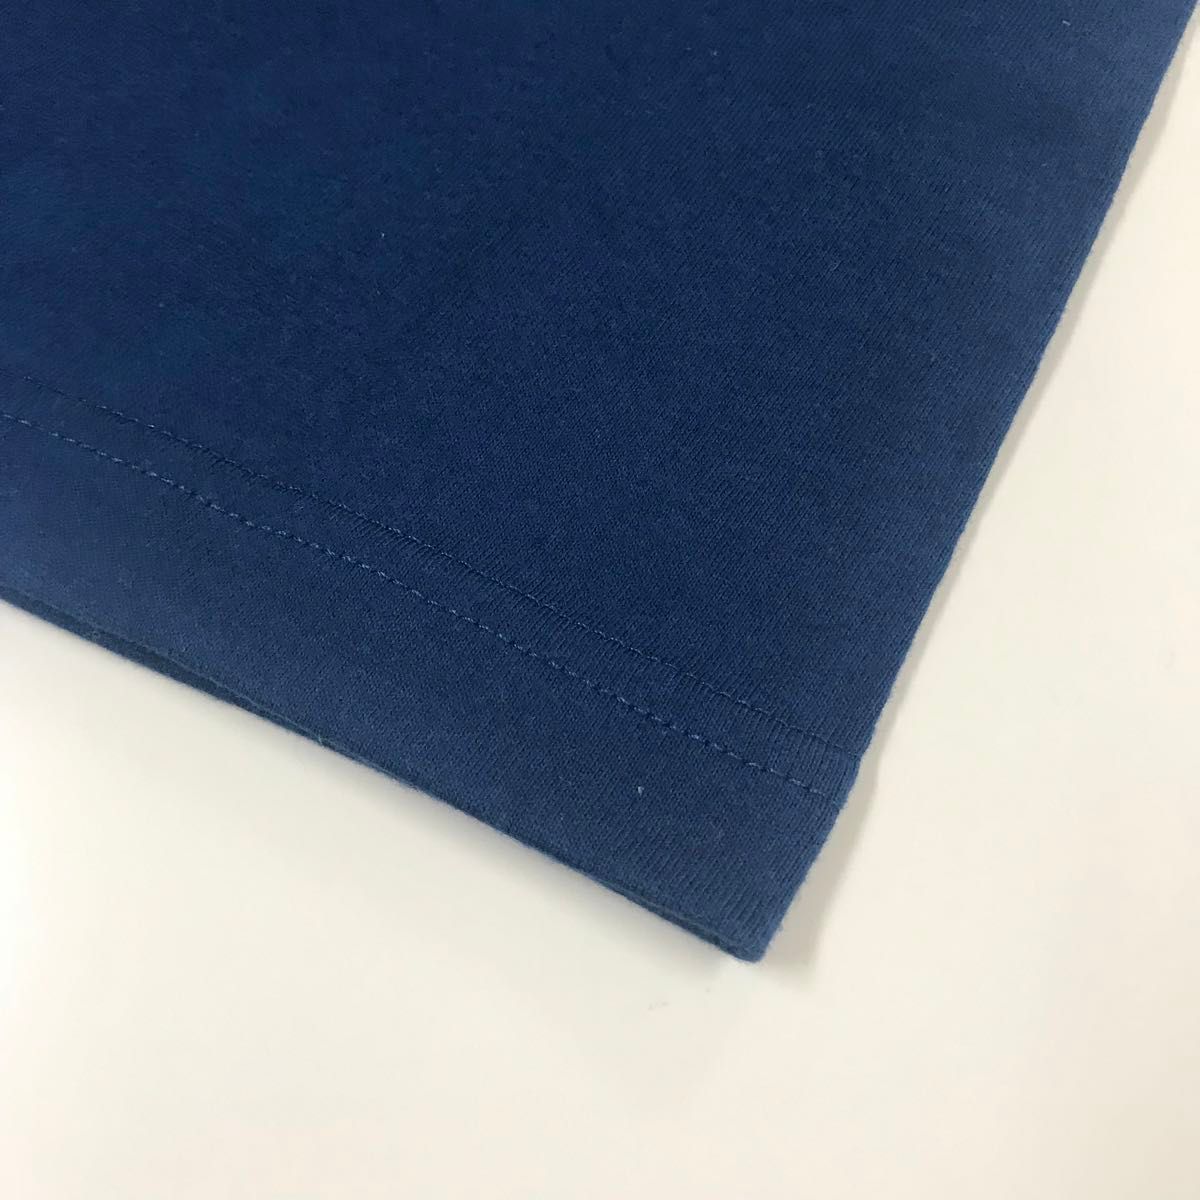 Tシャツ 半袖 5.6オンス ハイクオリティー【5001-01】M クラシックブルー 綿100%